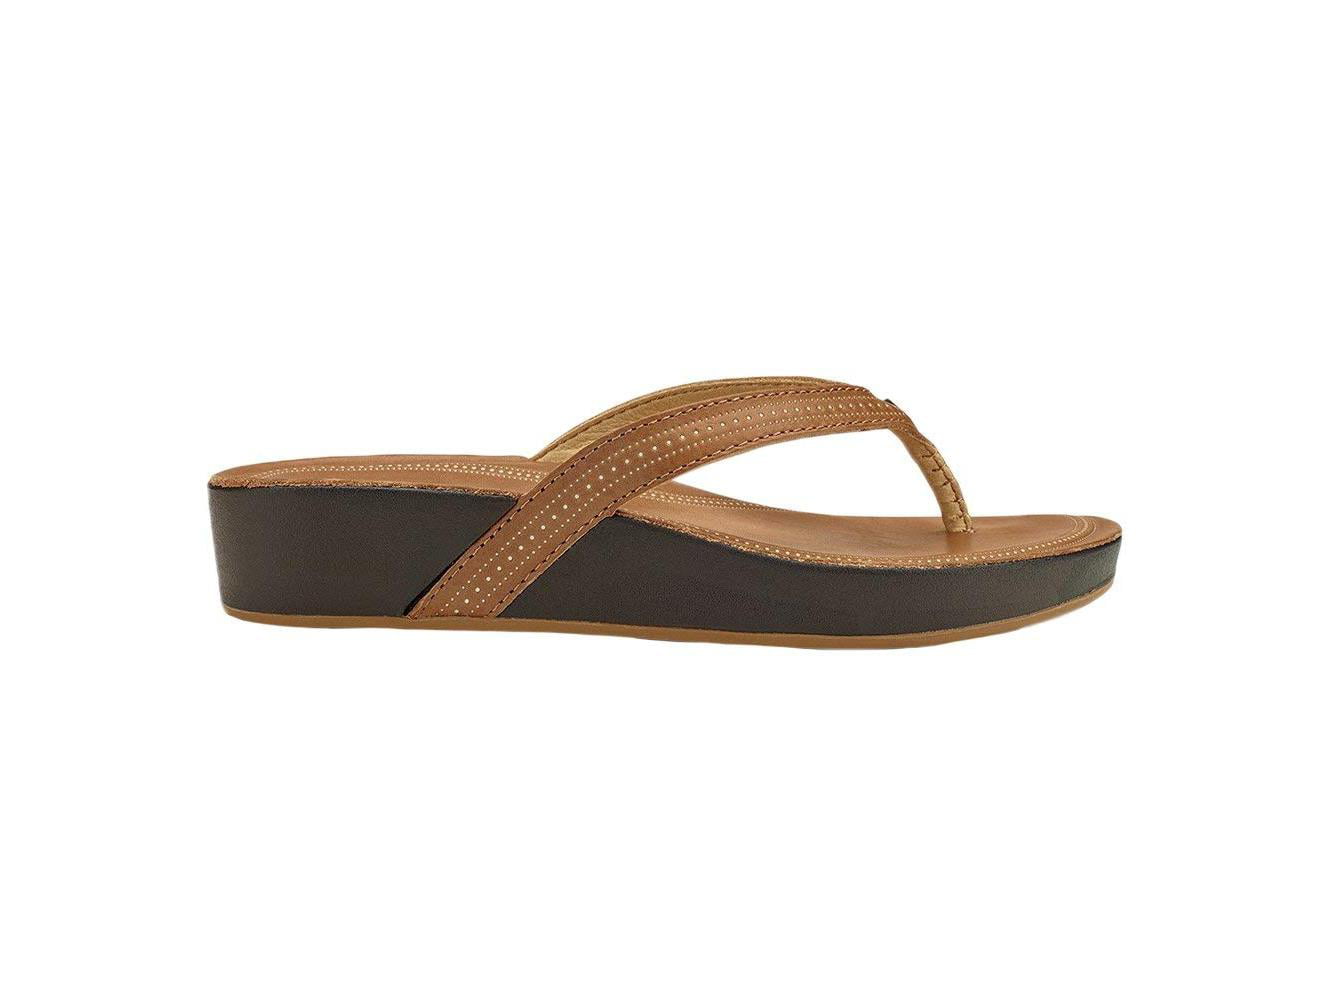 OluKai - olukai women's ola sandals - tan / tan - Walmart.com - Walmart.com